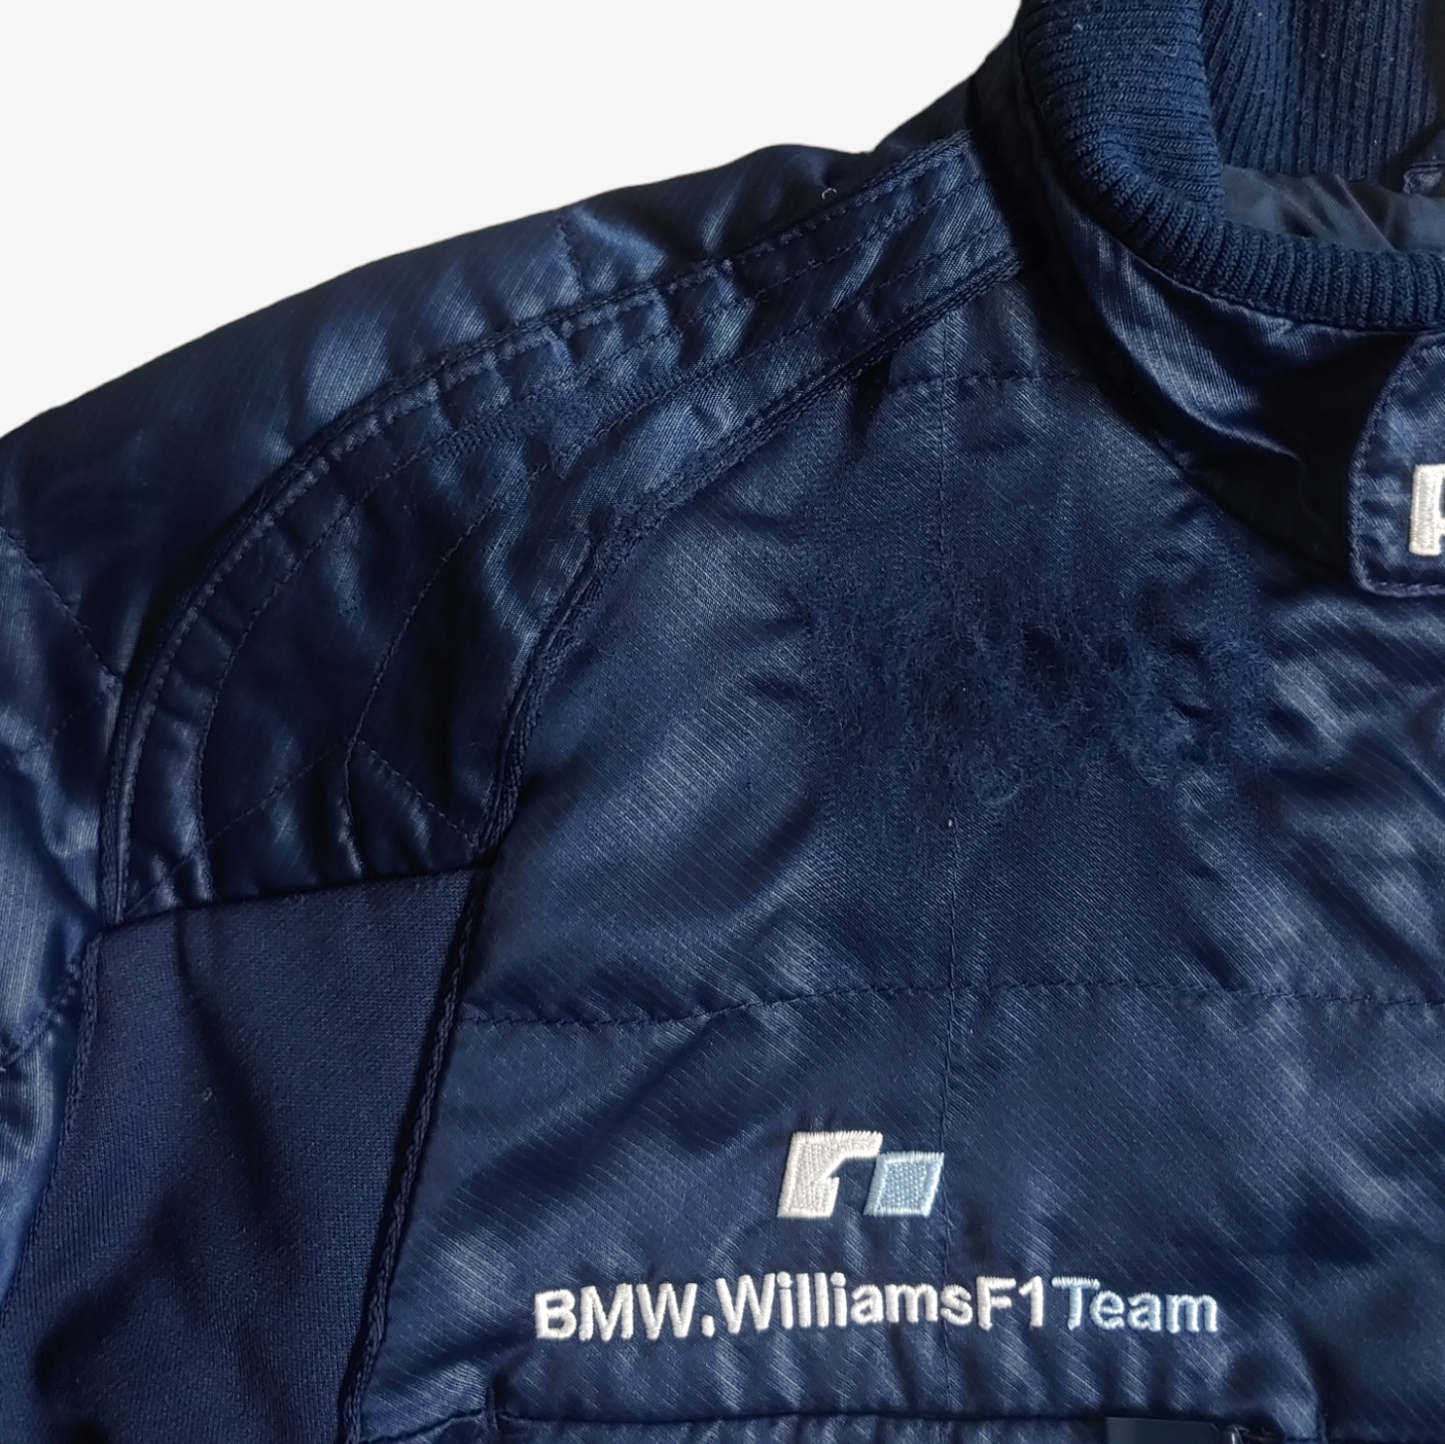 Vintage Y2K 2005 Puma x BMW Williams Formula One Racing Team Jacket Wear - Casspios Dream 